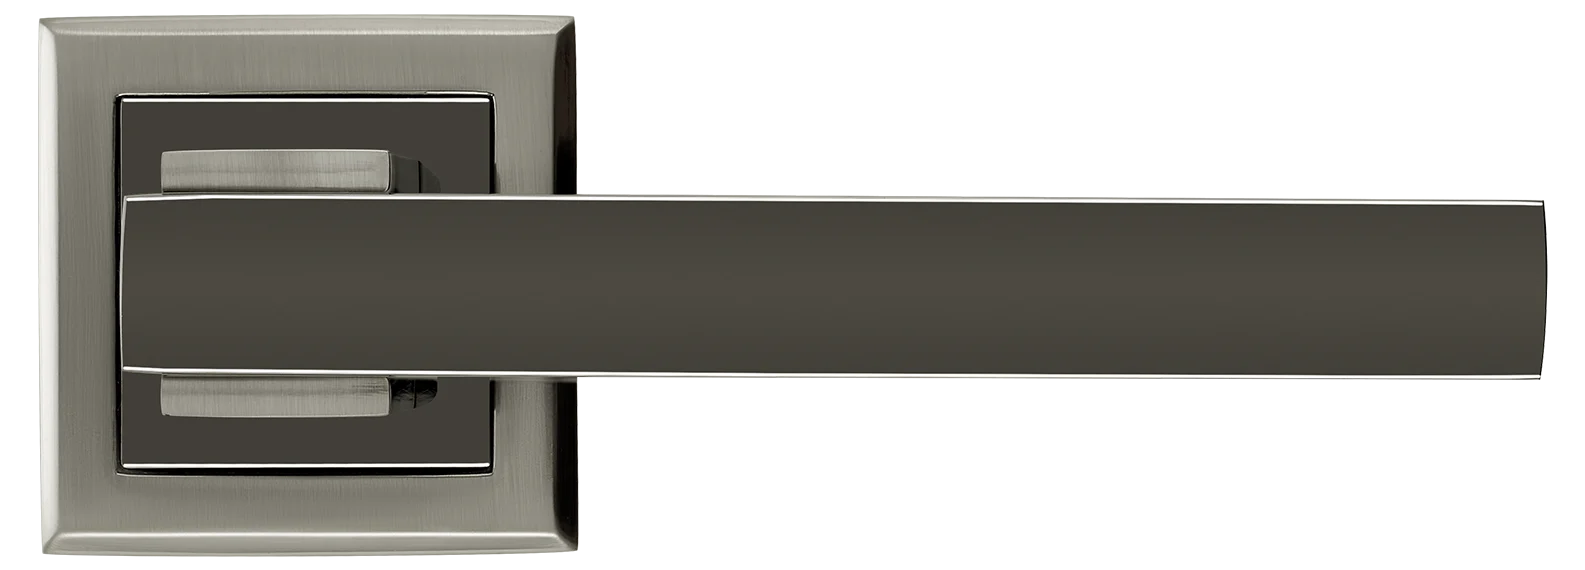 PIQUADRO, ручка дверная MH-37 SN/BN-S, на квадратной накладке, цвет - бел. никель/черн. никель фото купить в Екатеринбурге